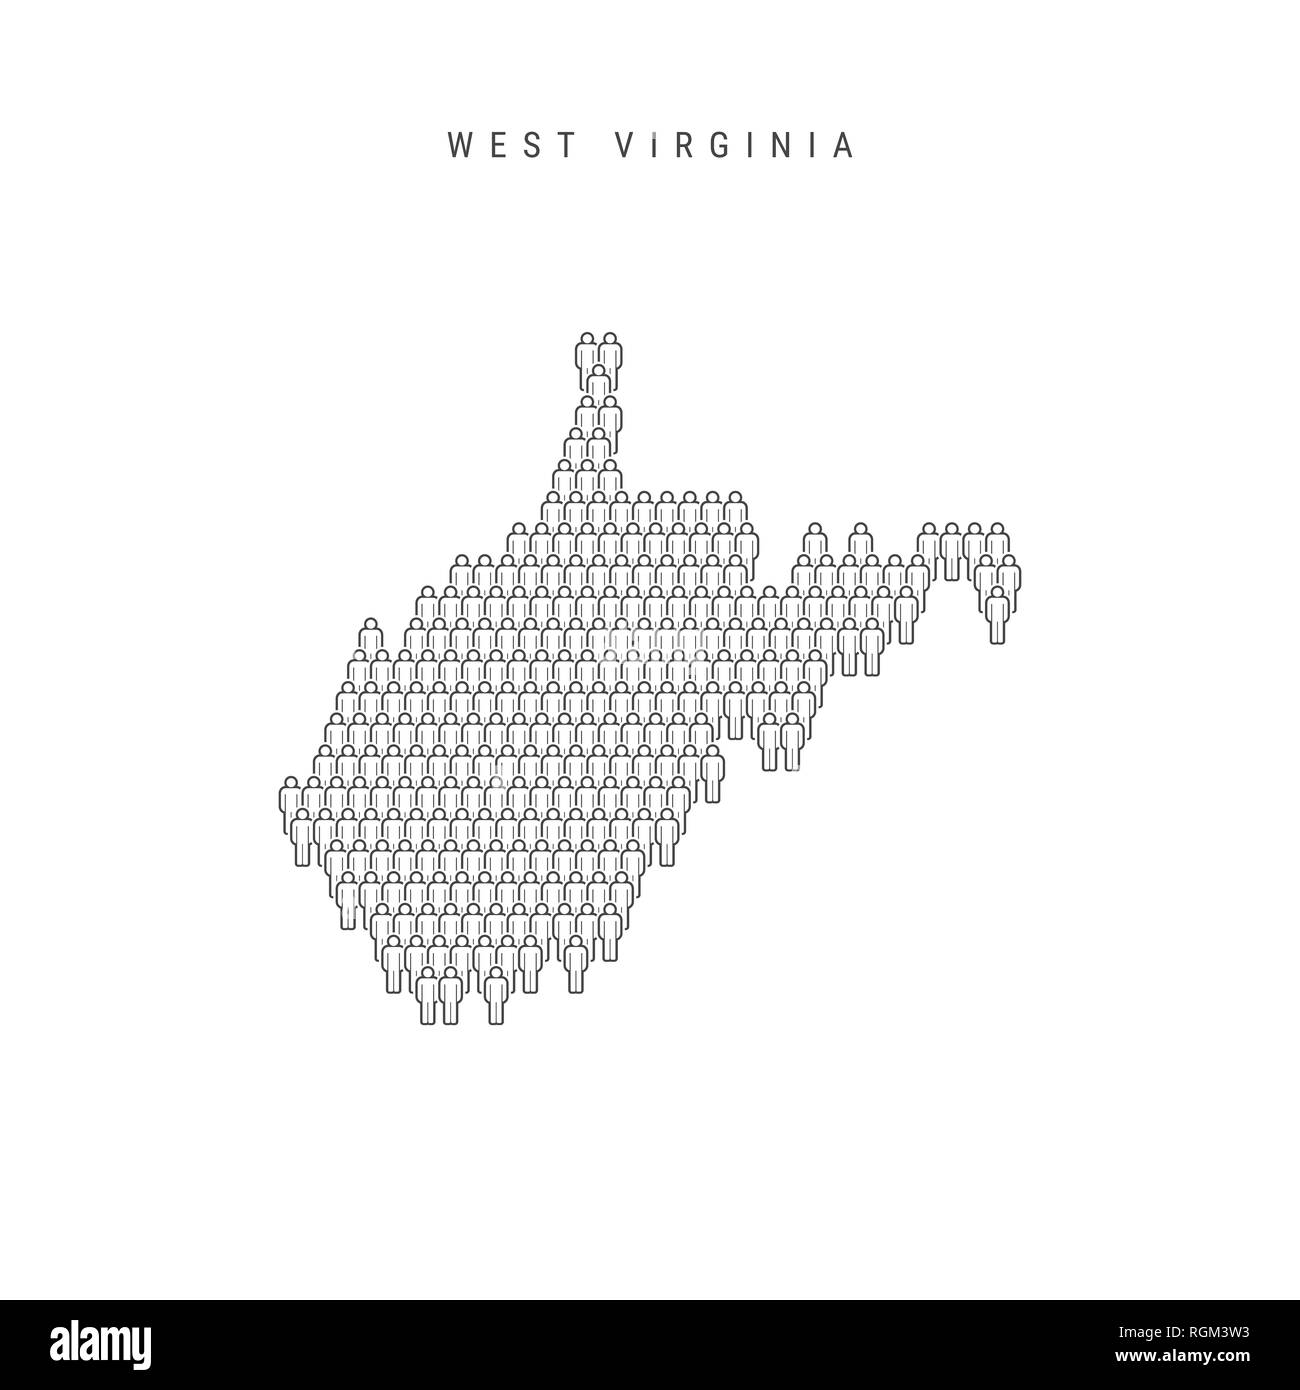 Leute Karte von West Virginia, US-Staat. Stilisierte Silhouette, Leute in der Form einer Karte von West Virginia. West Virginia Bevölkerung. Illustratio Stockfoto